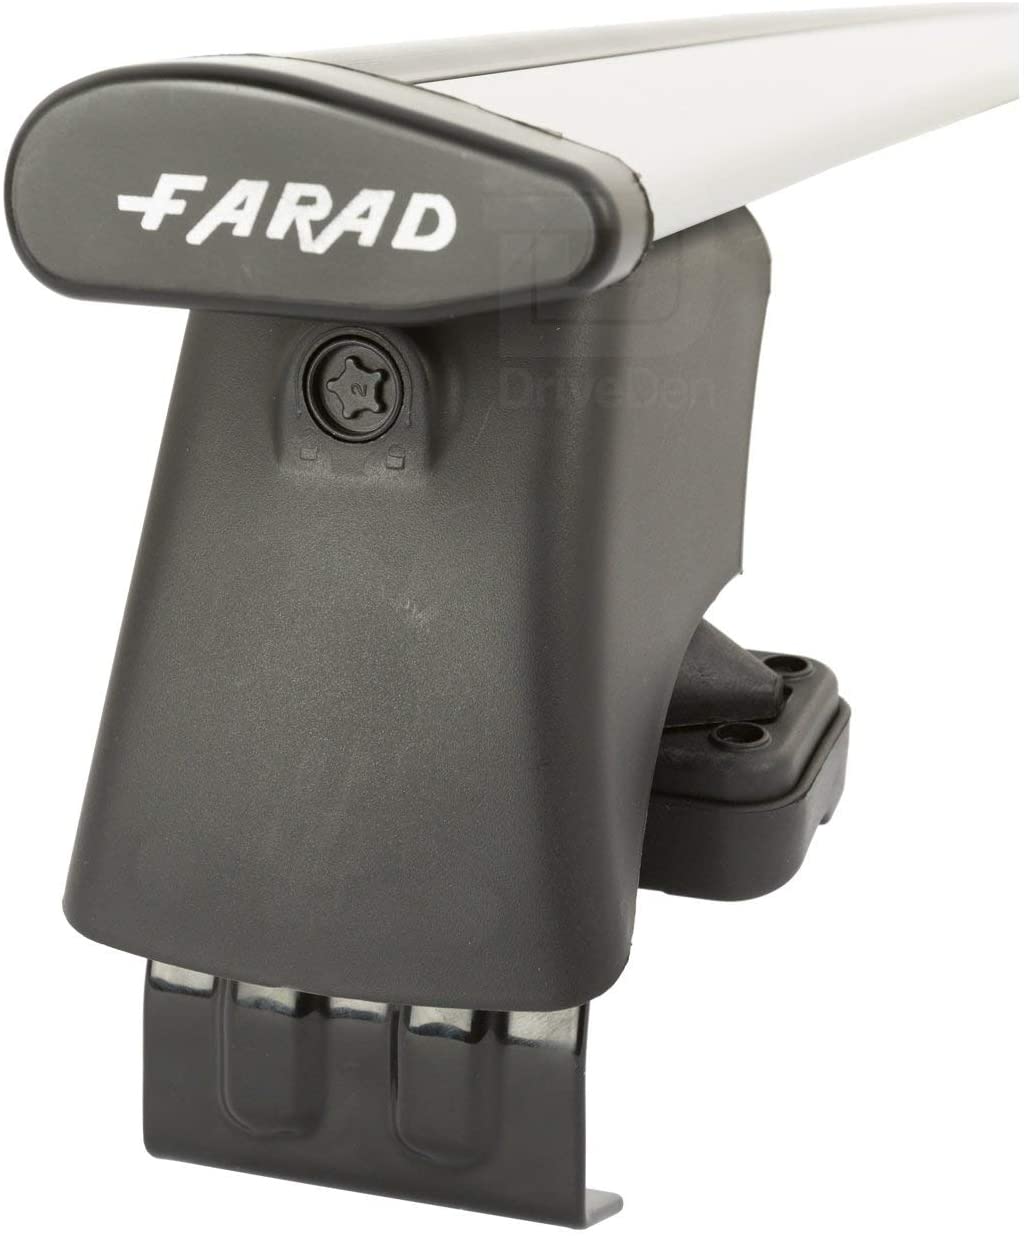 FARAD-Kit H2 per barre portatutto - Kia Picanto 2011-2017 (senza corrimano)